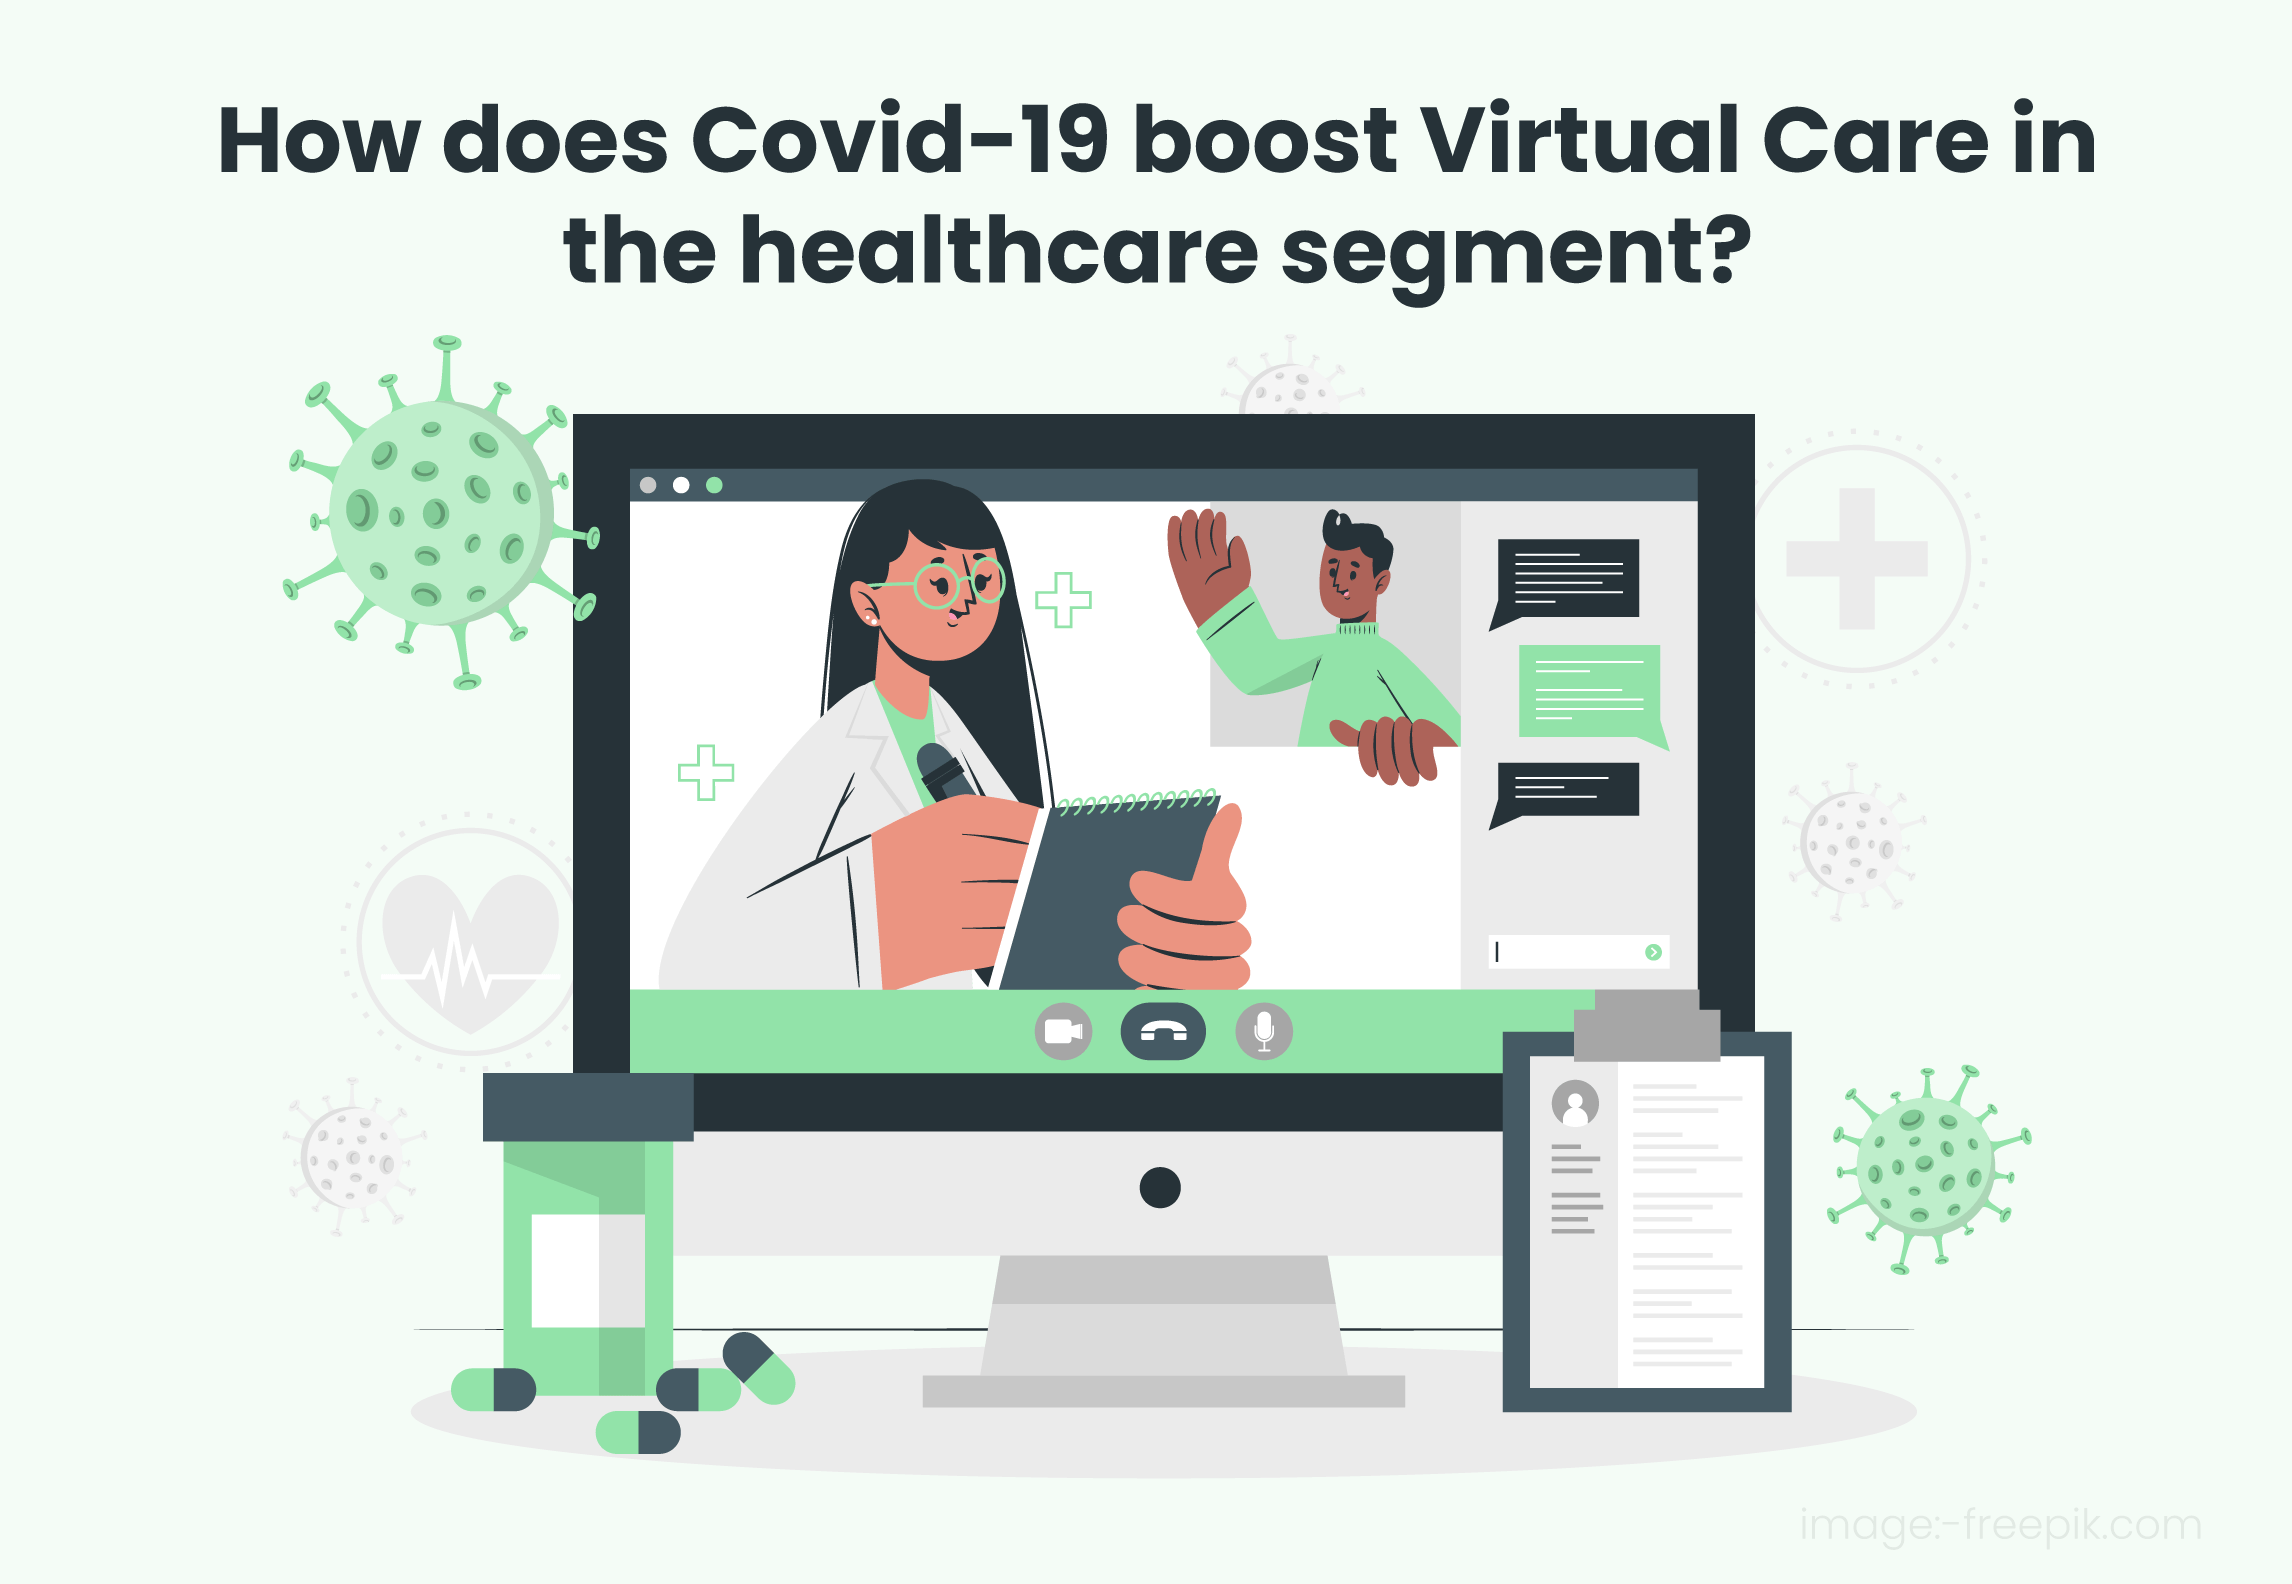 How Did Covid-19 Boost Virtual Care In The Healthcare Segment?